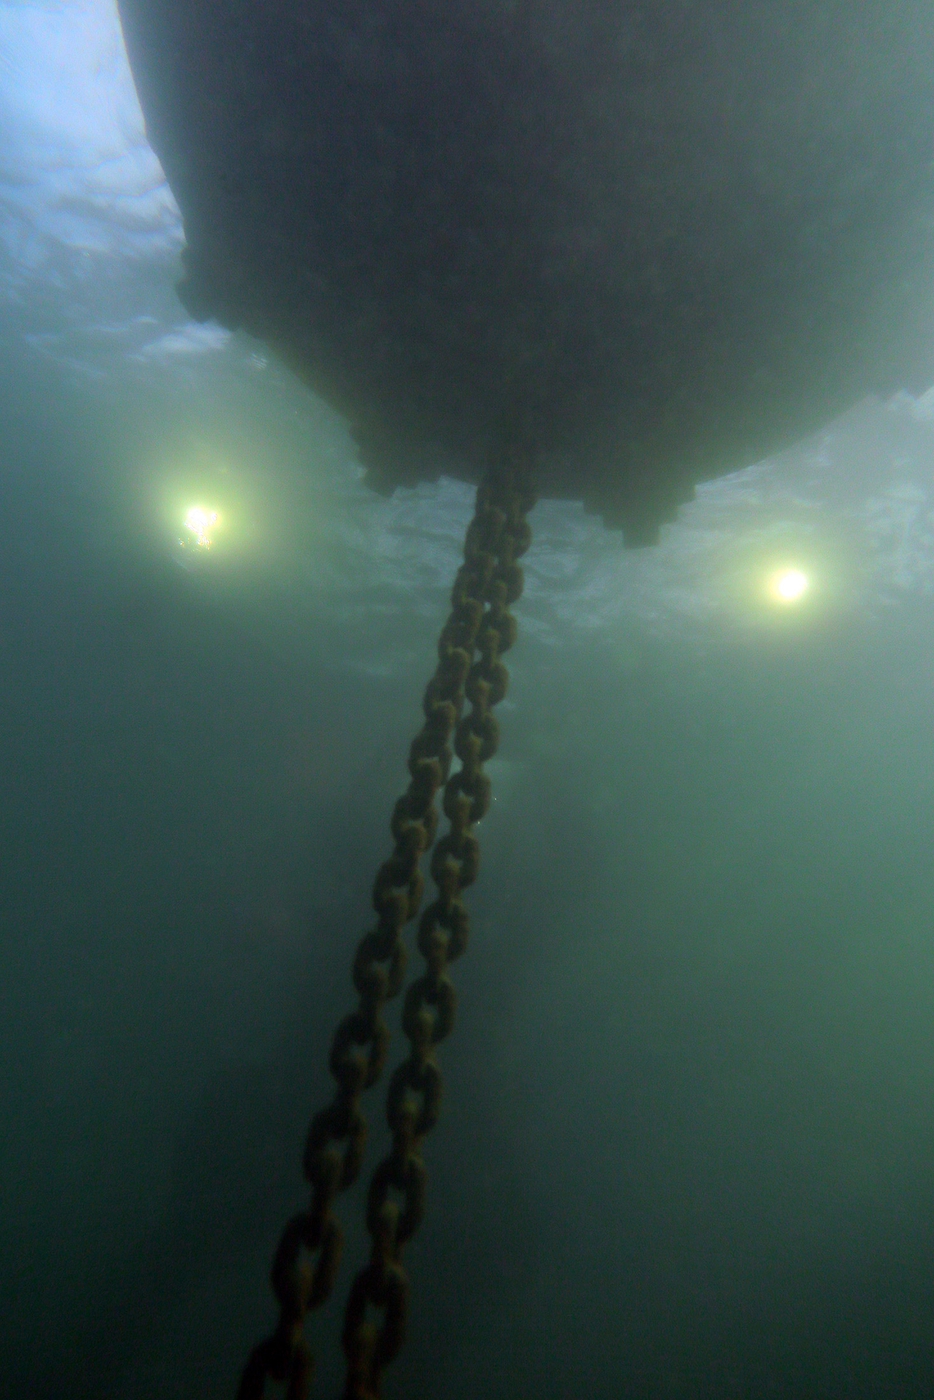 Protecziun da la patria, Underwater inspection of the deadweight anchorage system, Photo © Stefano Dondi